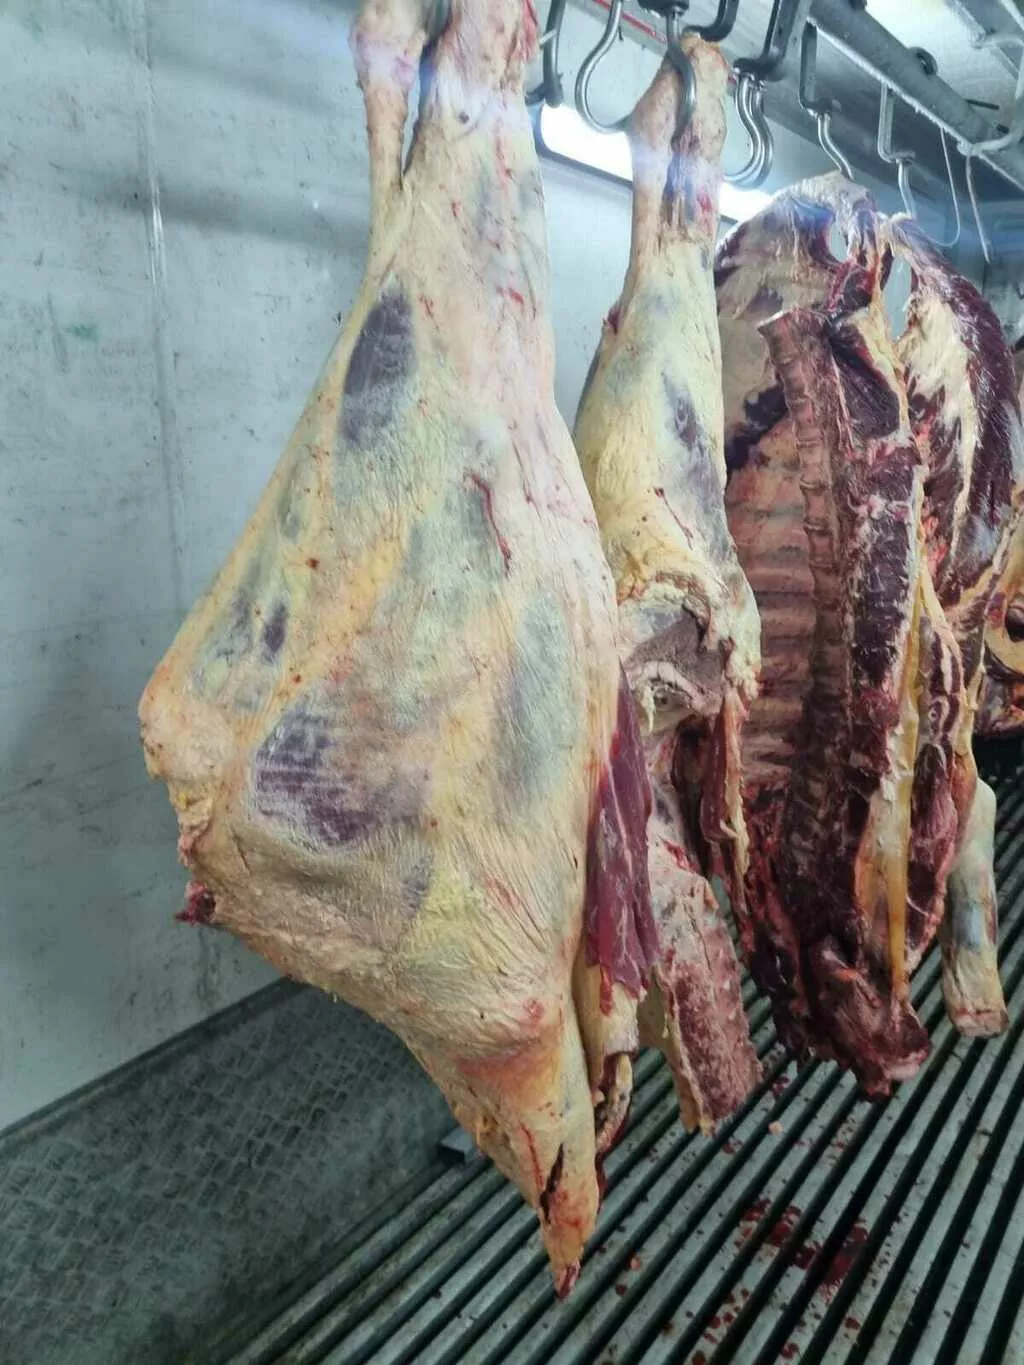 мясо говядины в полутушах и четвертинах в Воронеже и Воронежской области